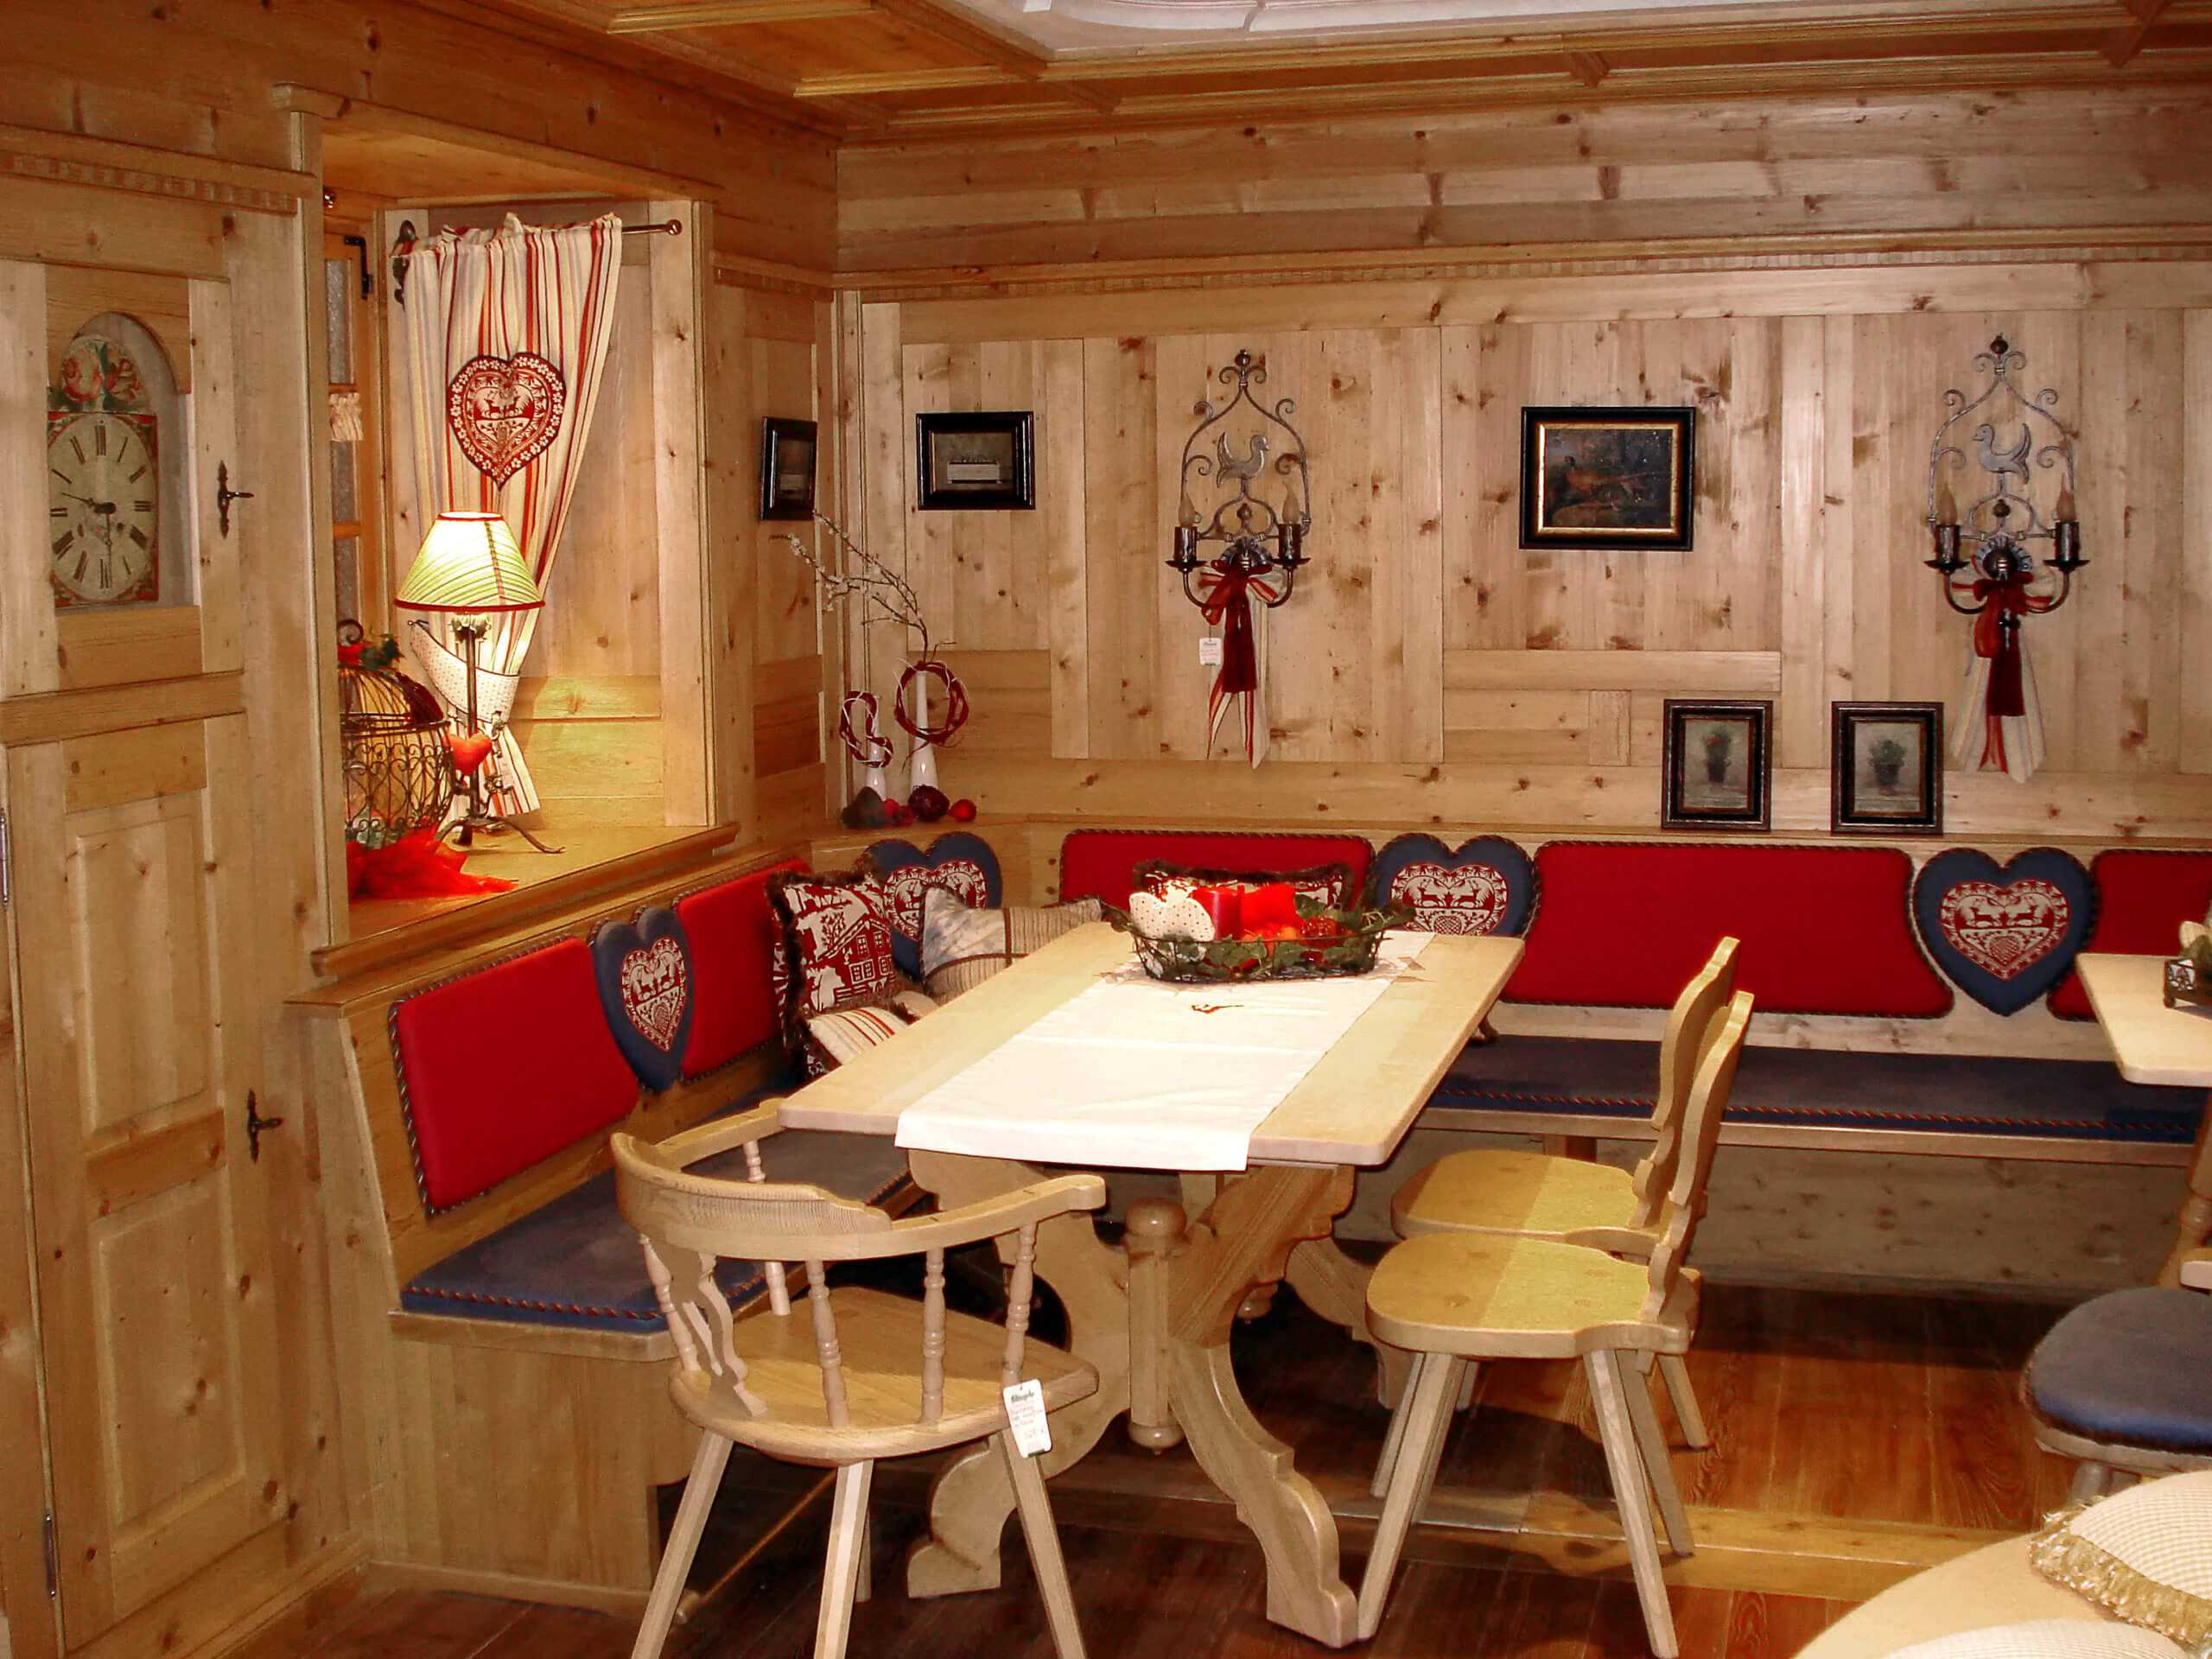 Gastronomiemöbel und Einrichtung aus Holz im Landhausstil